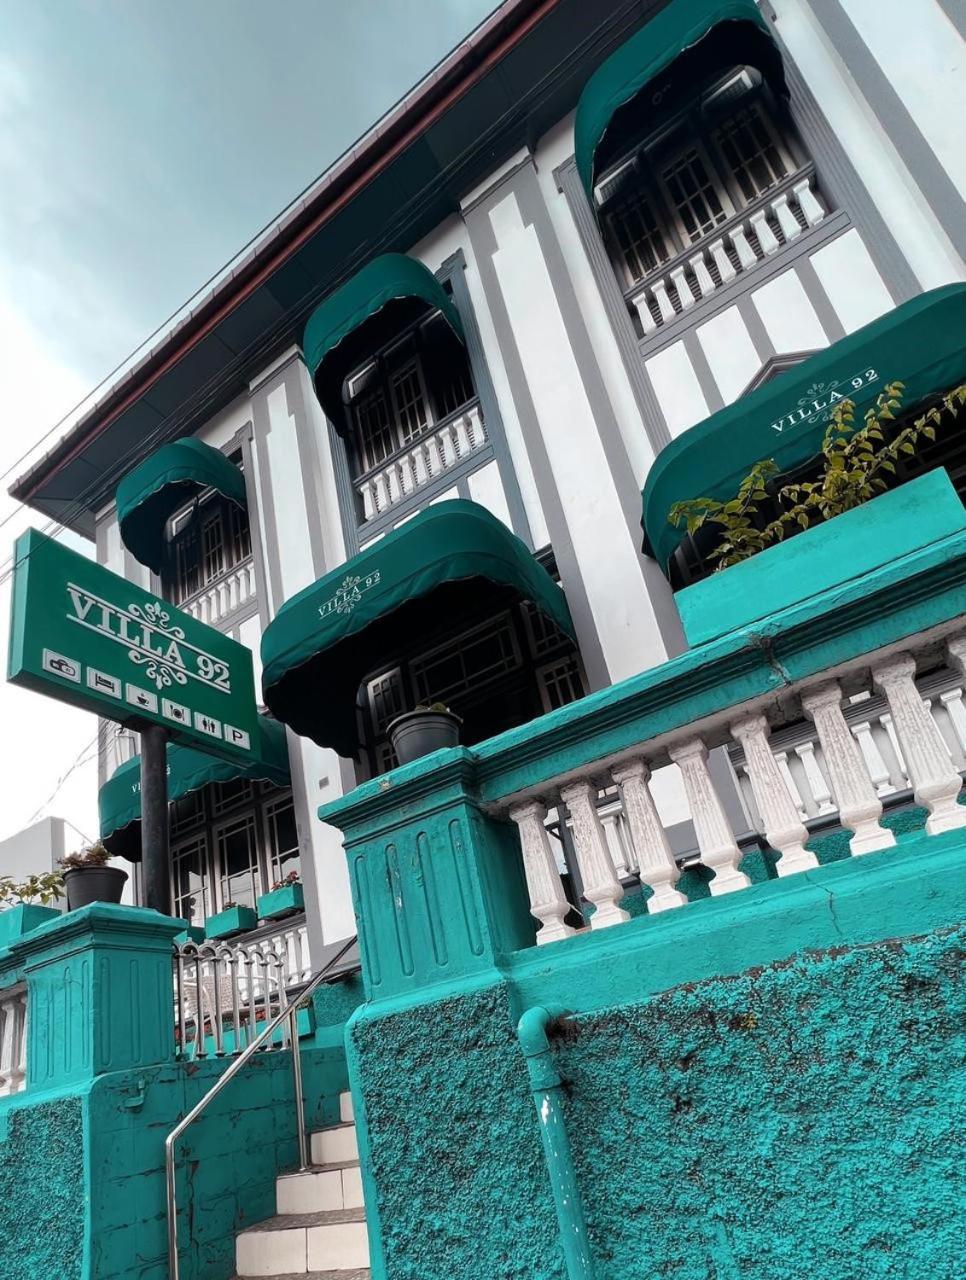 Villa 92 City Stay Kandy Exterior photo